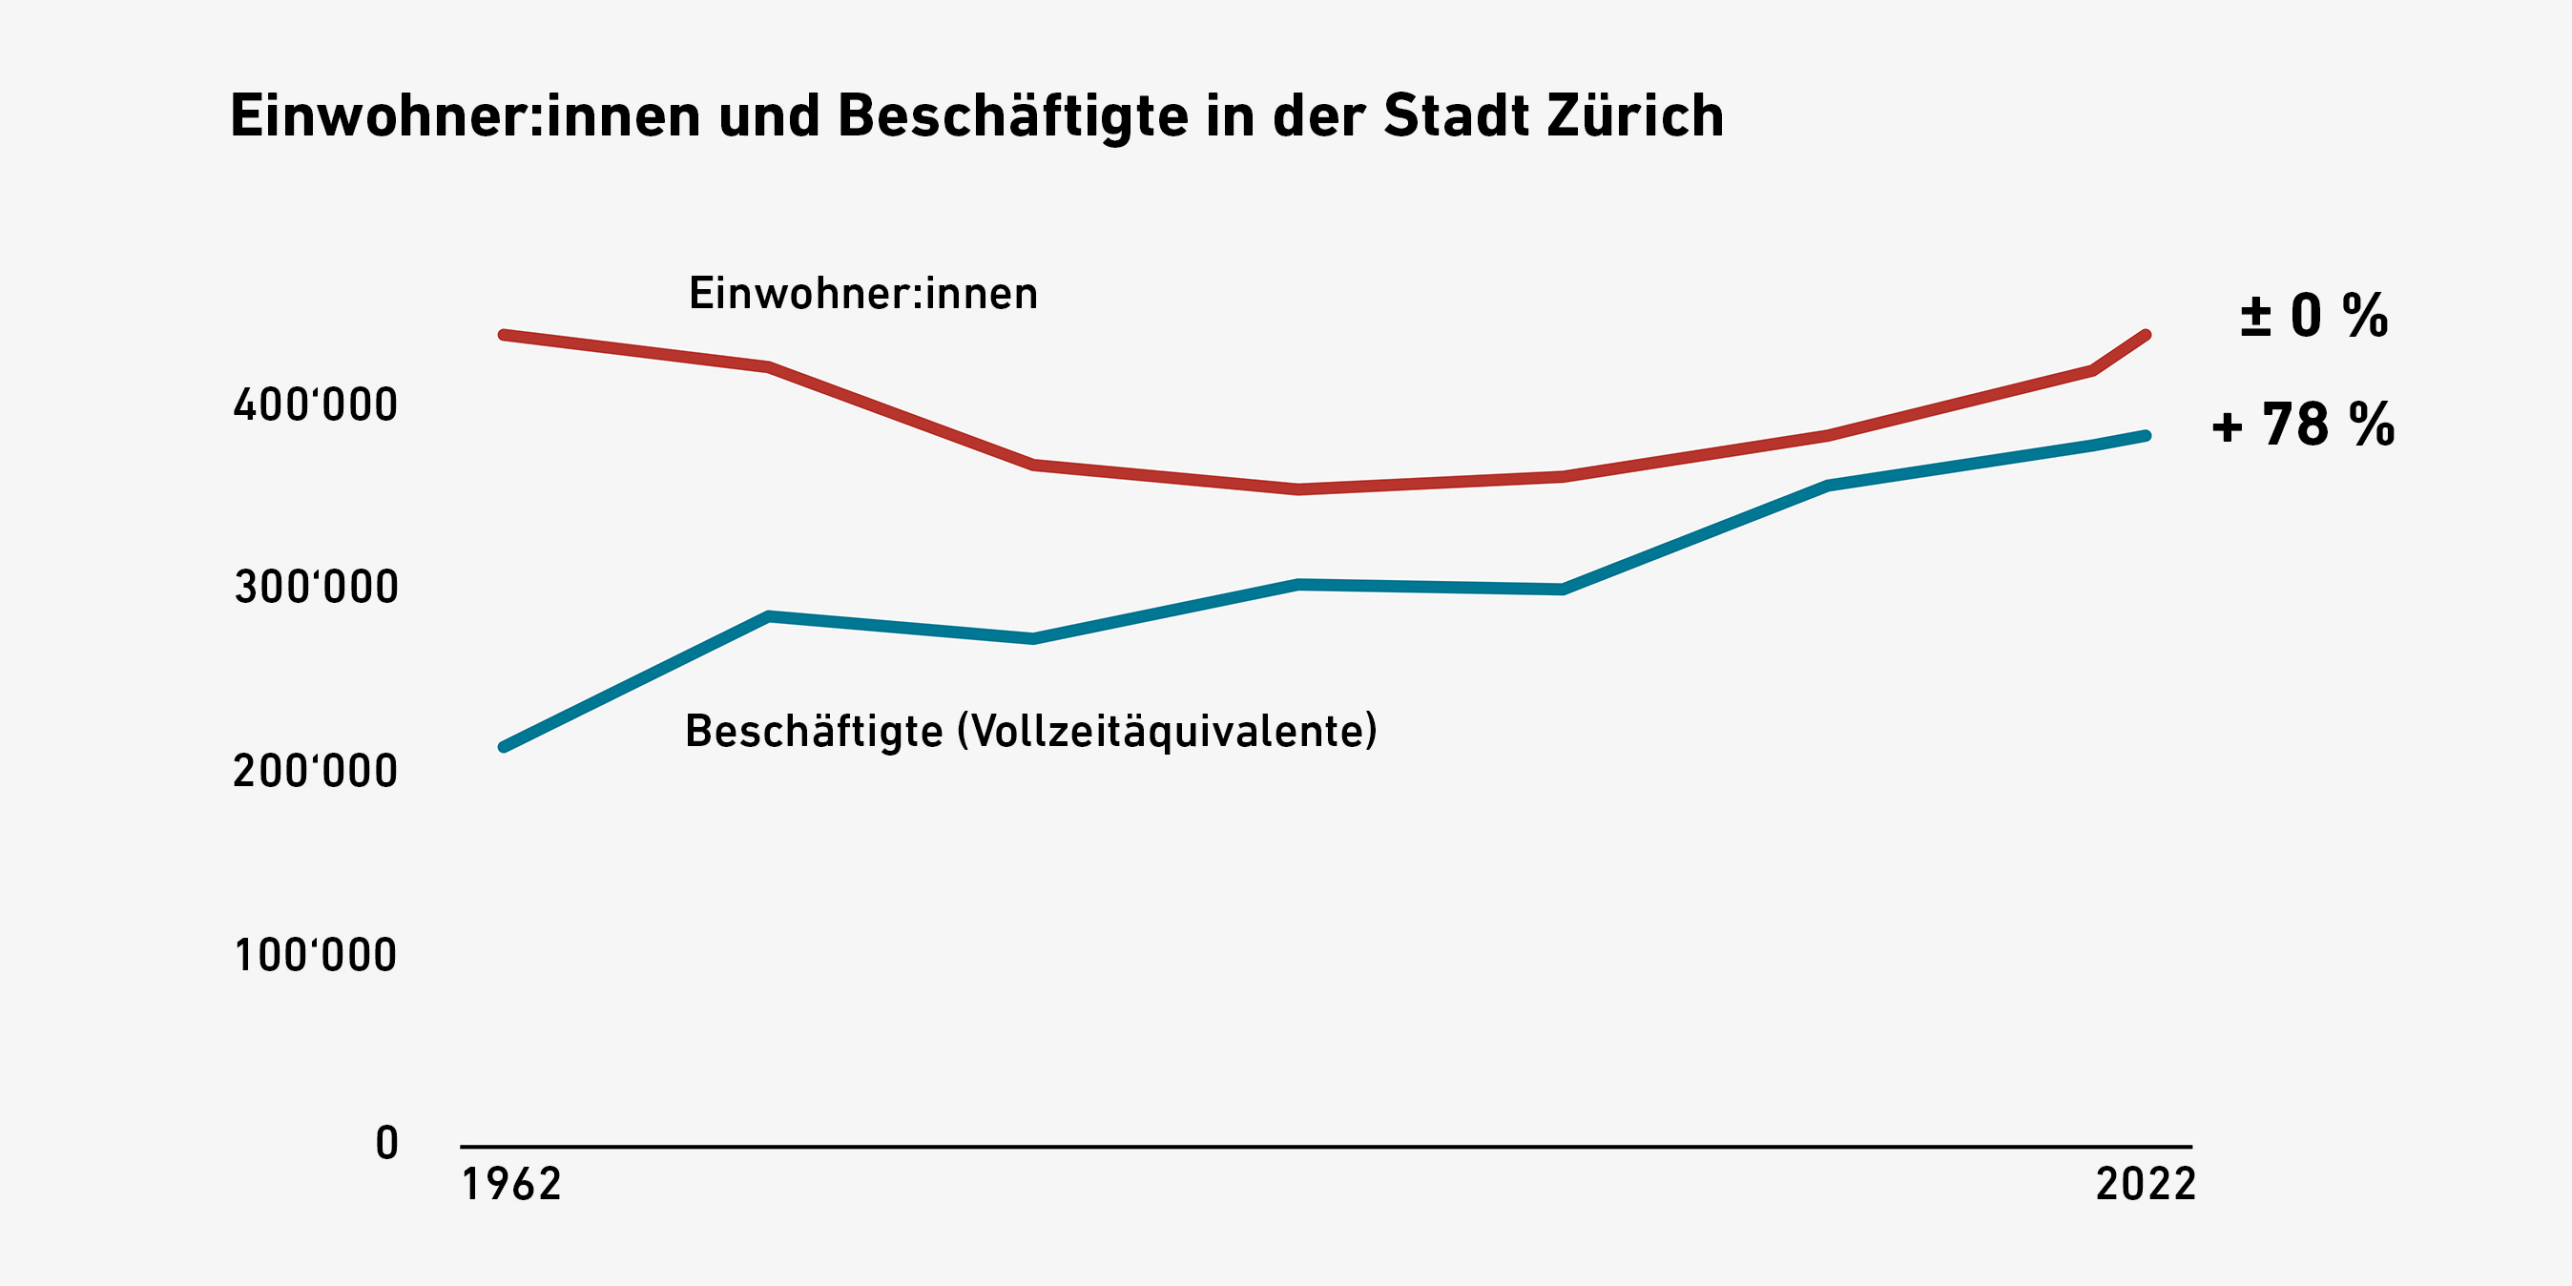 Grafik mit Verläufen zu Einwohner:innenzahl und Zahl der Beschäftigten in Zürich.